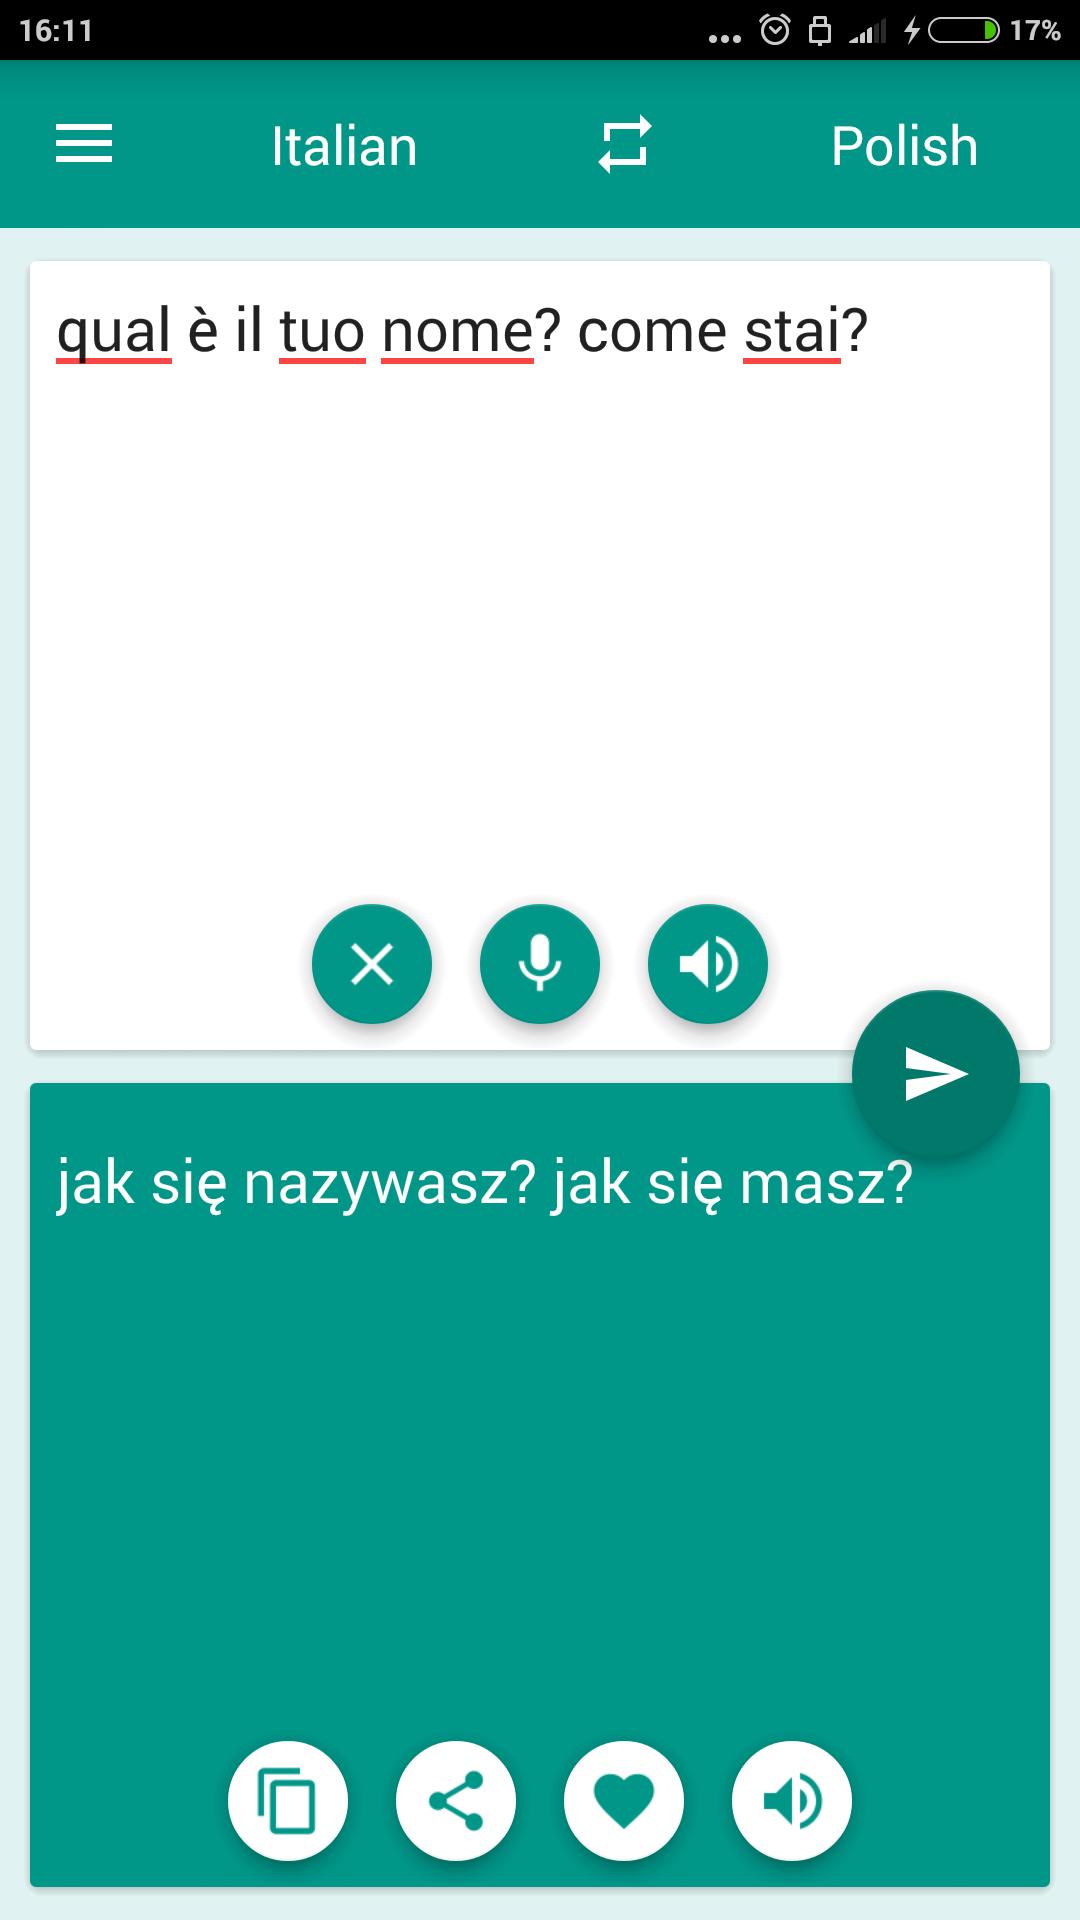 Tłumacz polsko-włoski for Android - APK Download